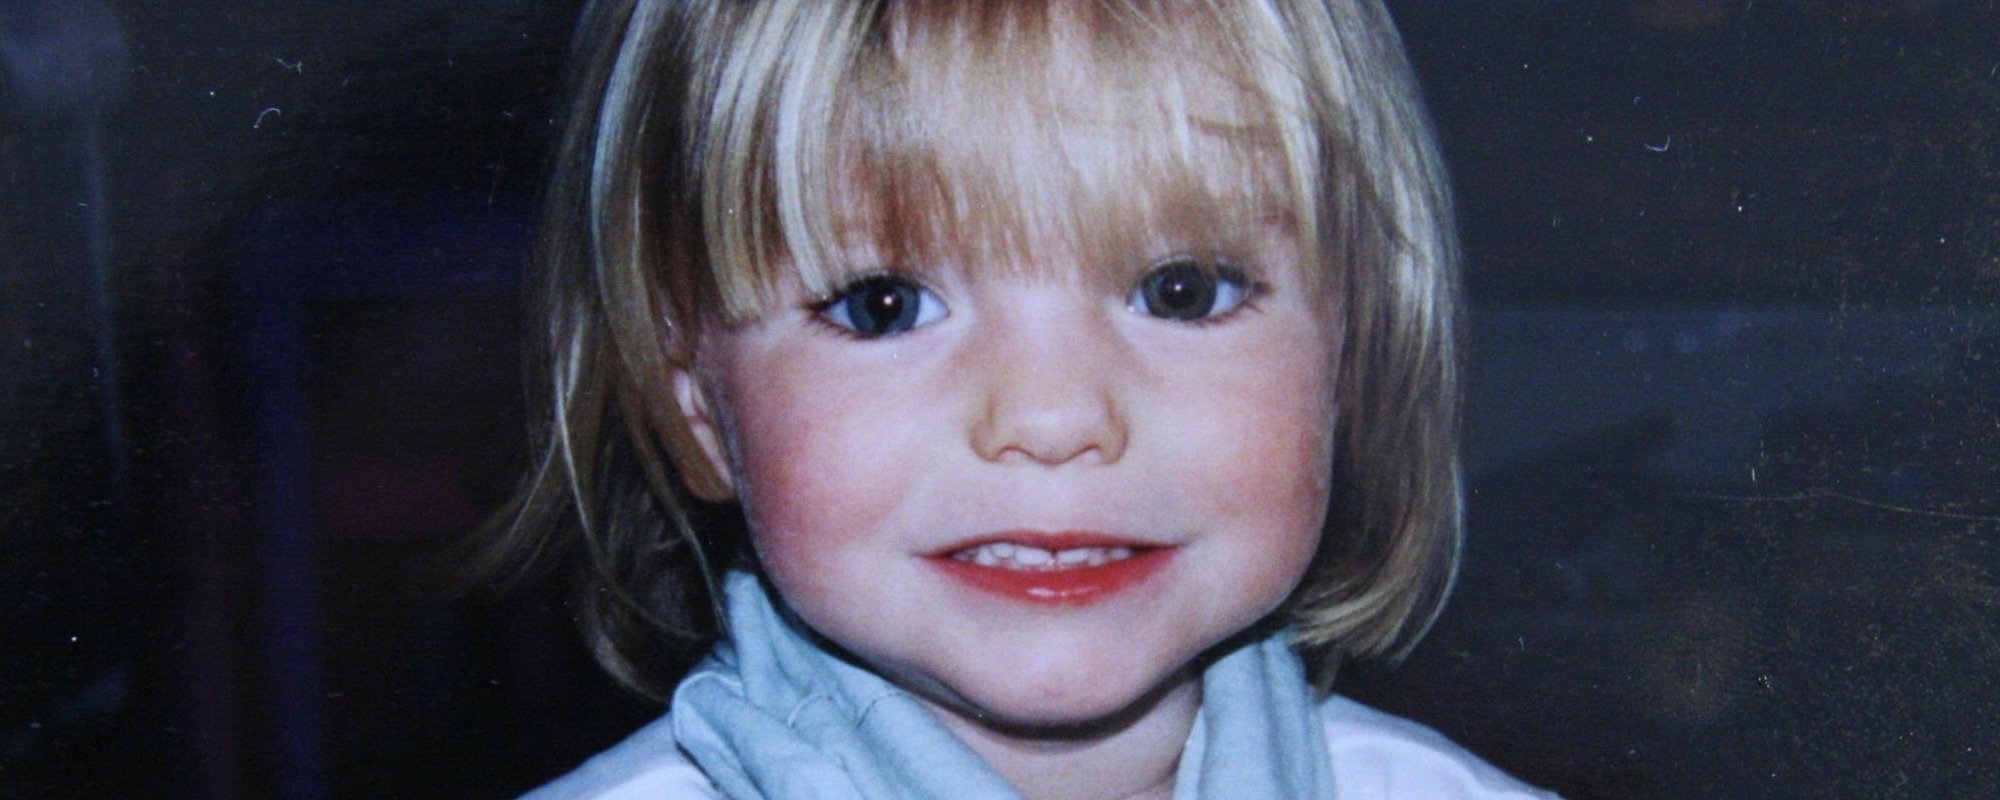 Εξαφάνιση μικρής Μαντλίν: Αυτός είναι ο Γερμανός δολοφόνος της – Δείτε την φωτογραφία του